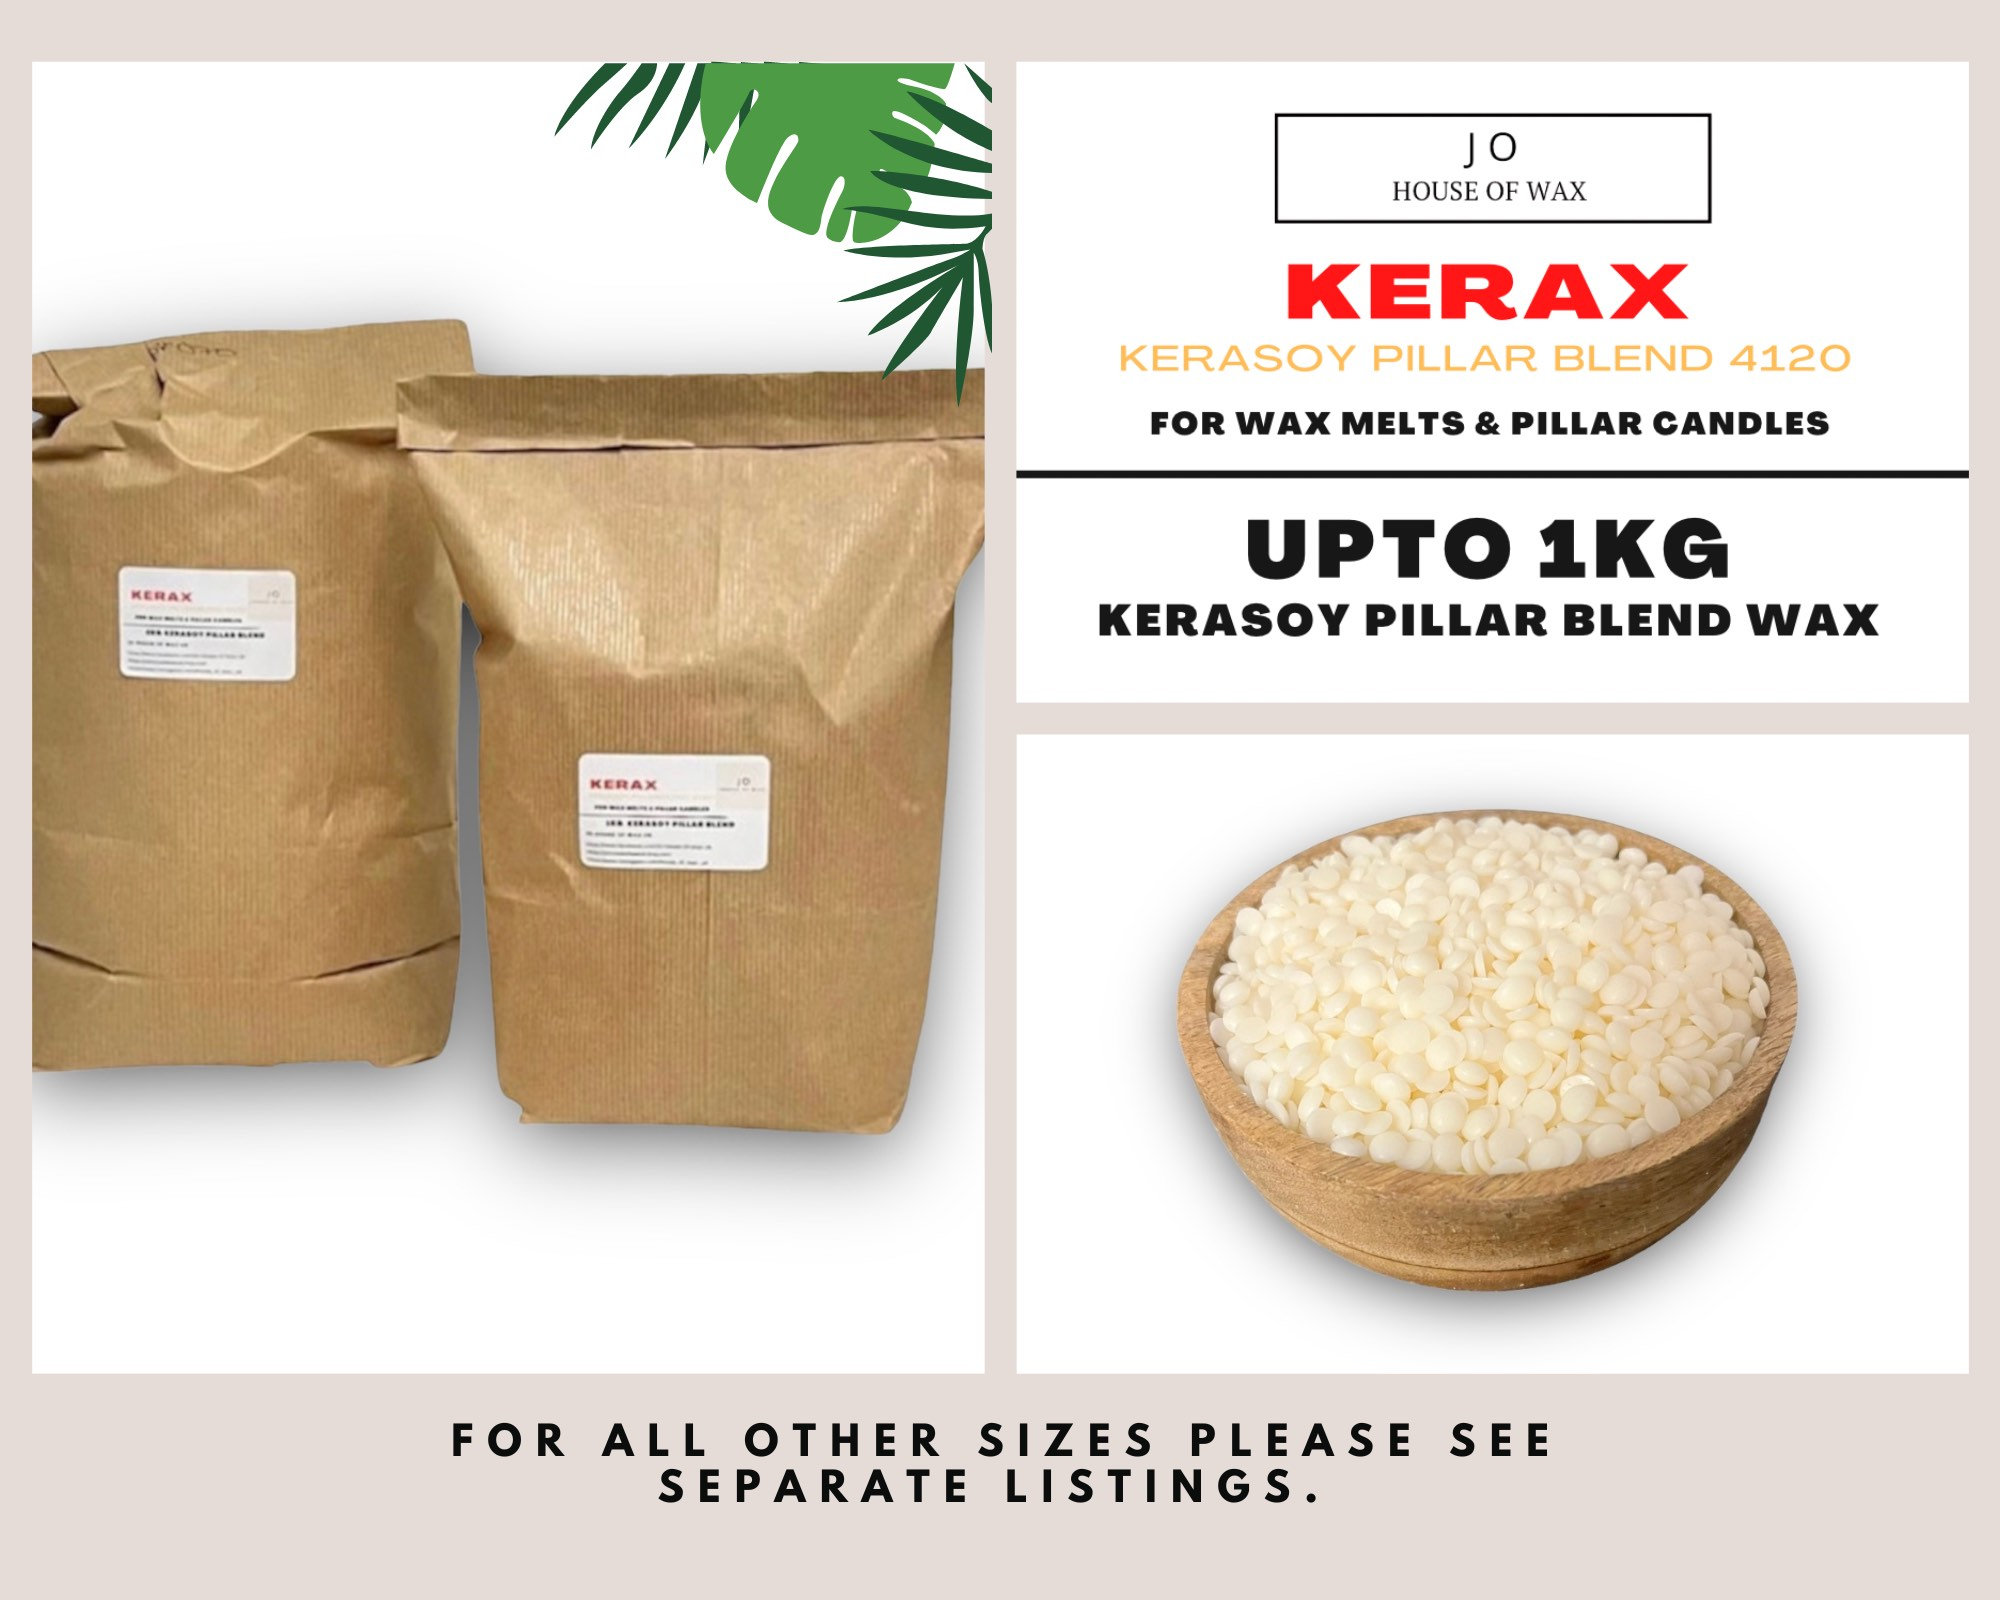 Kerax Kerasoy Pillar Blend 4120 100% Natural Soy Wax Pastels for